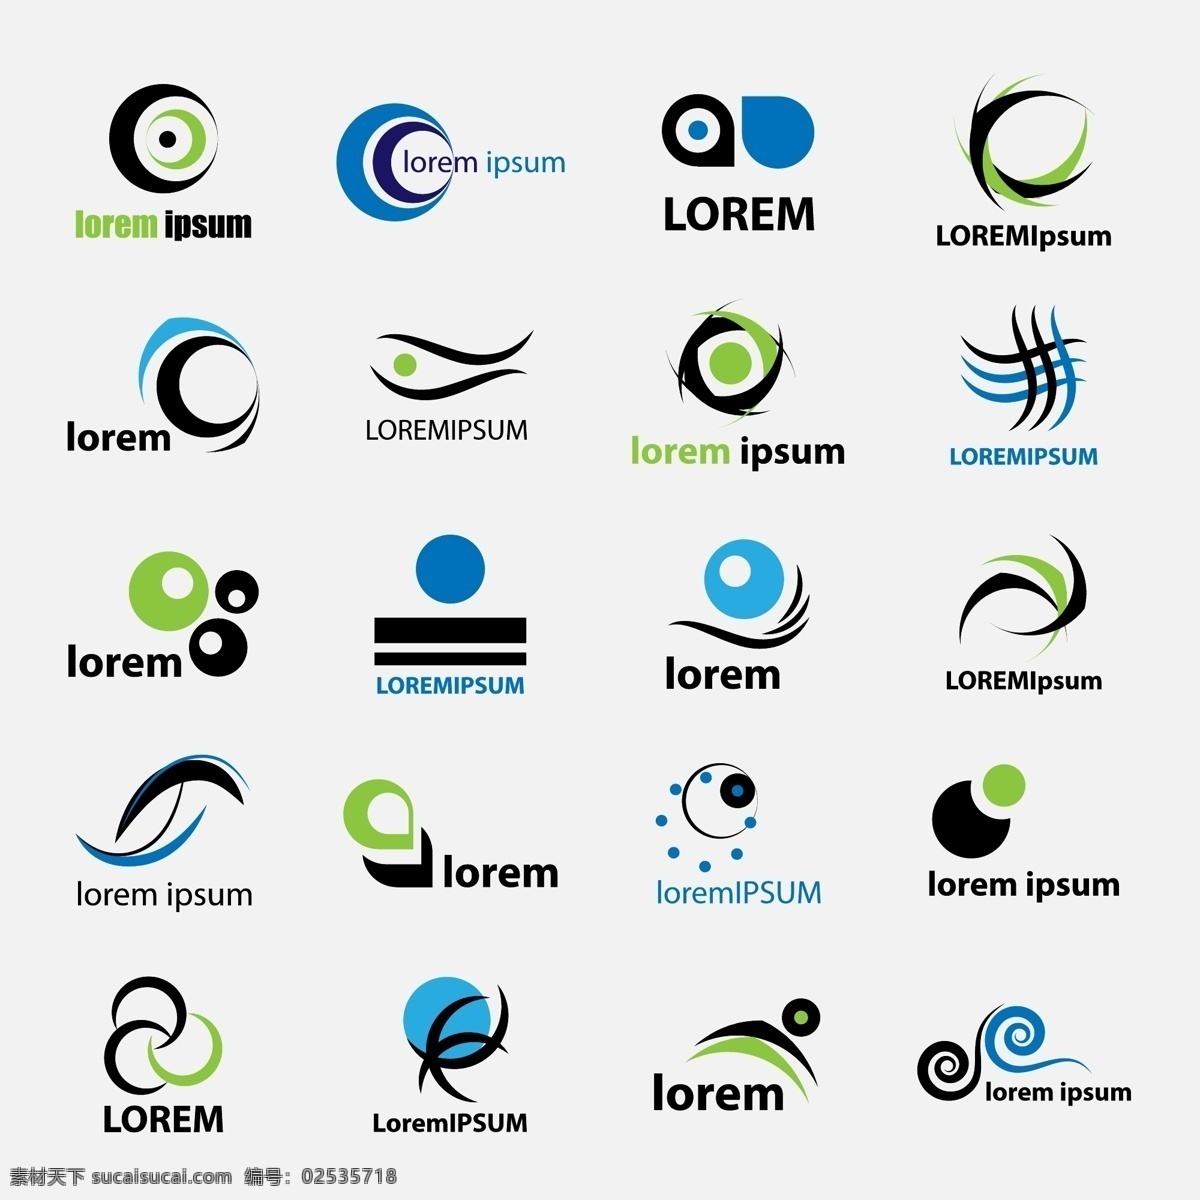 时尚潮流 logo logo设计 创意 logo图形 标志设计 商标设计 企业logo 公司logo 行业标志 标志图标 矢量素材 白色